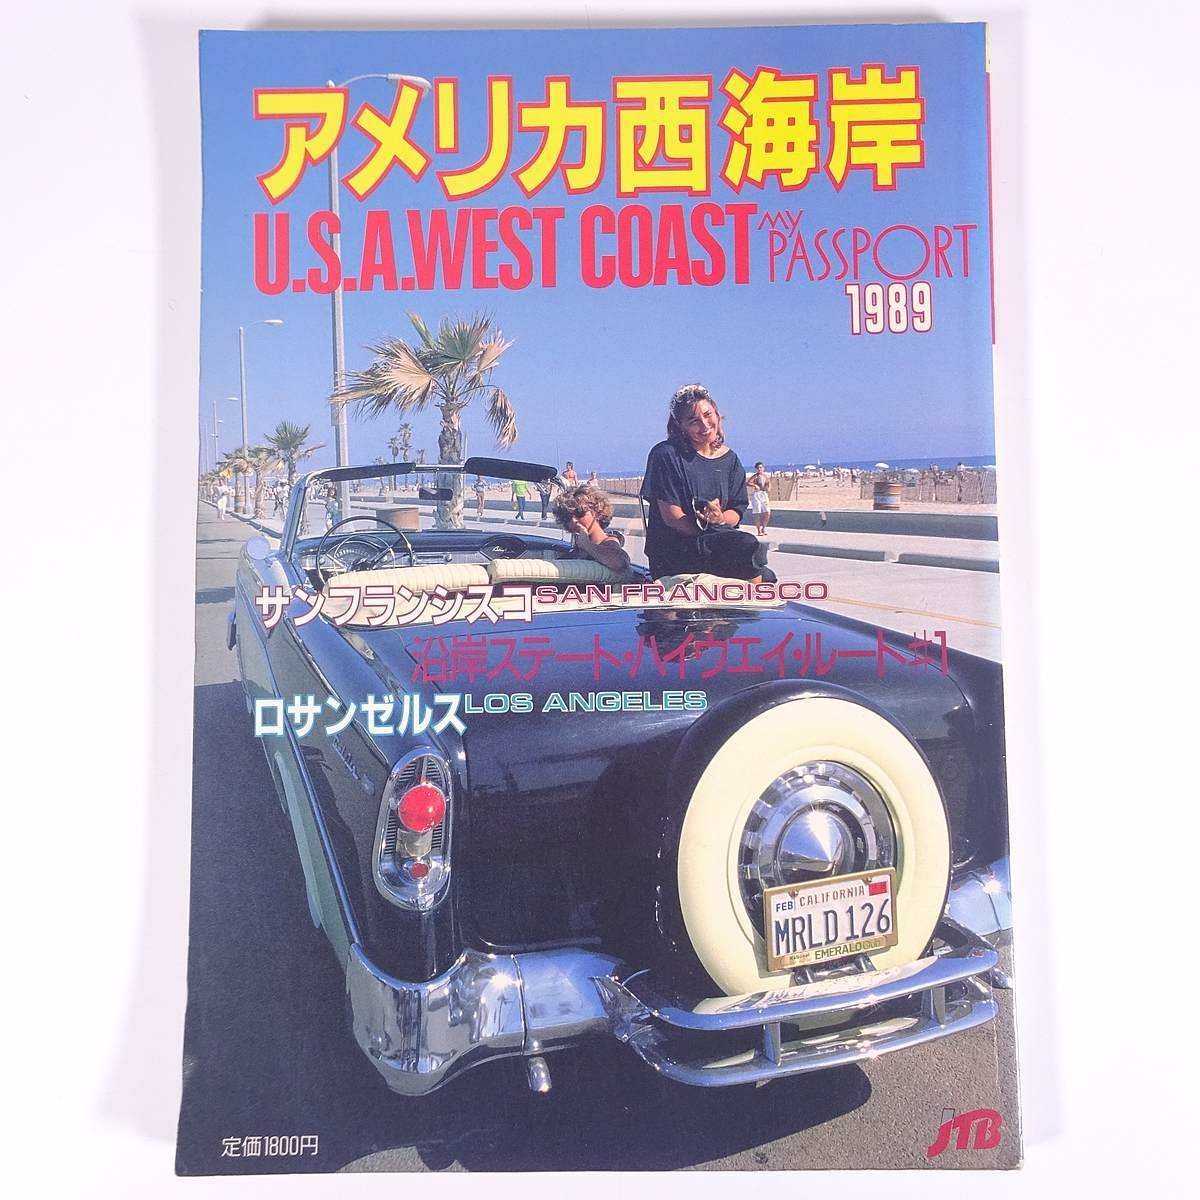 アメリカ西海岸'89 マイ・パスポート JTB 日本交通公社 1989 大型本 旅行 観光